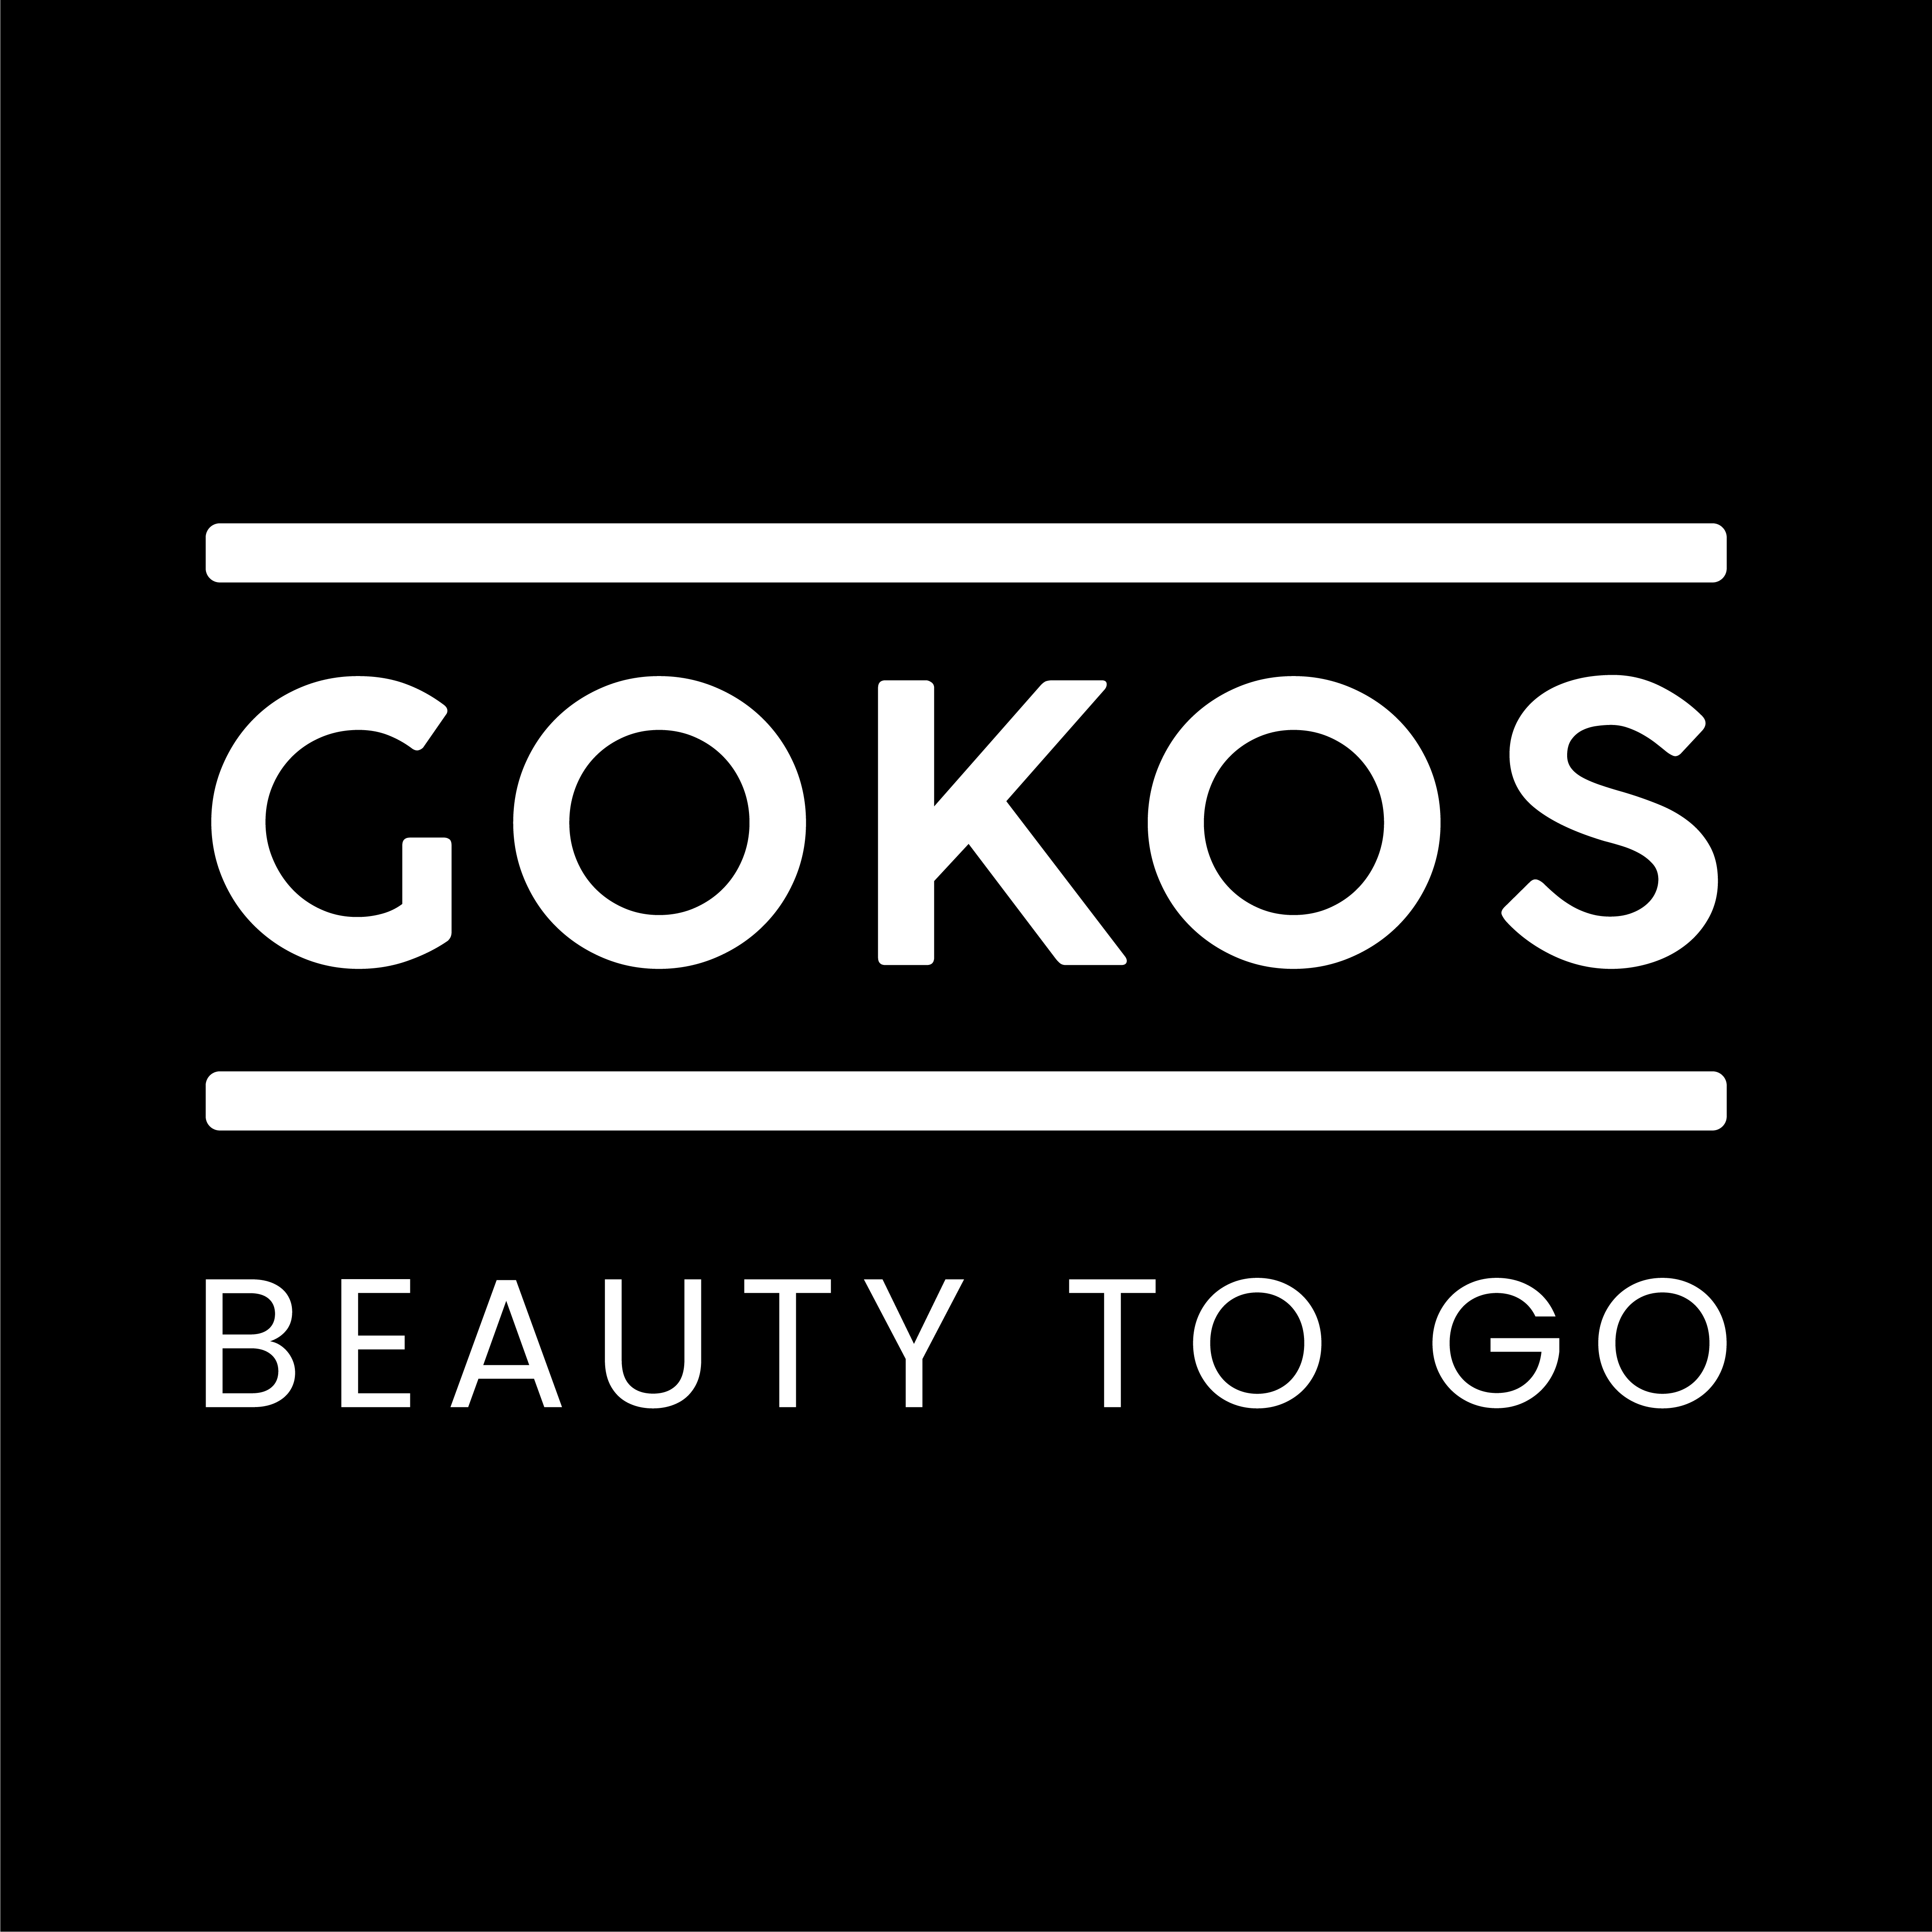 GOKOS - BEAUTY TO GO Logo